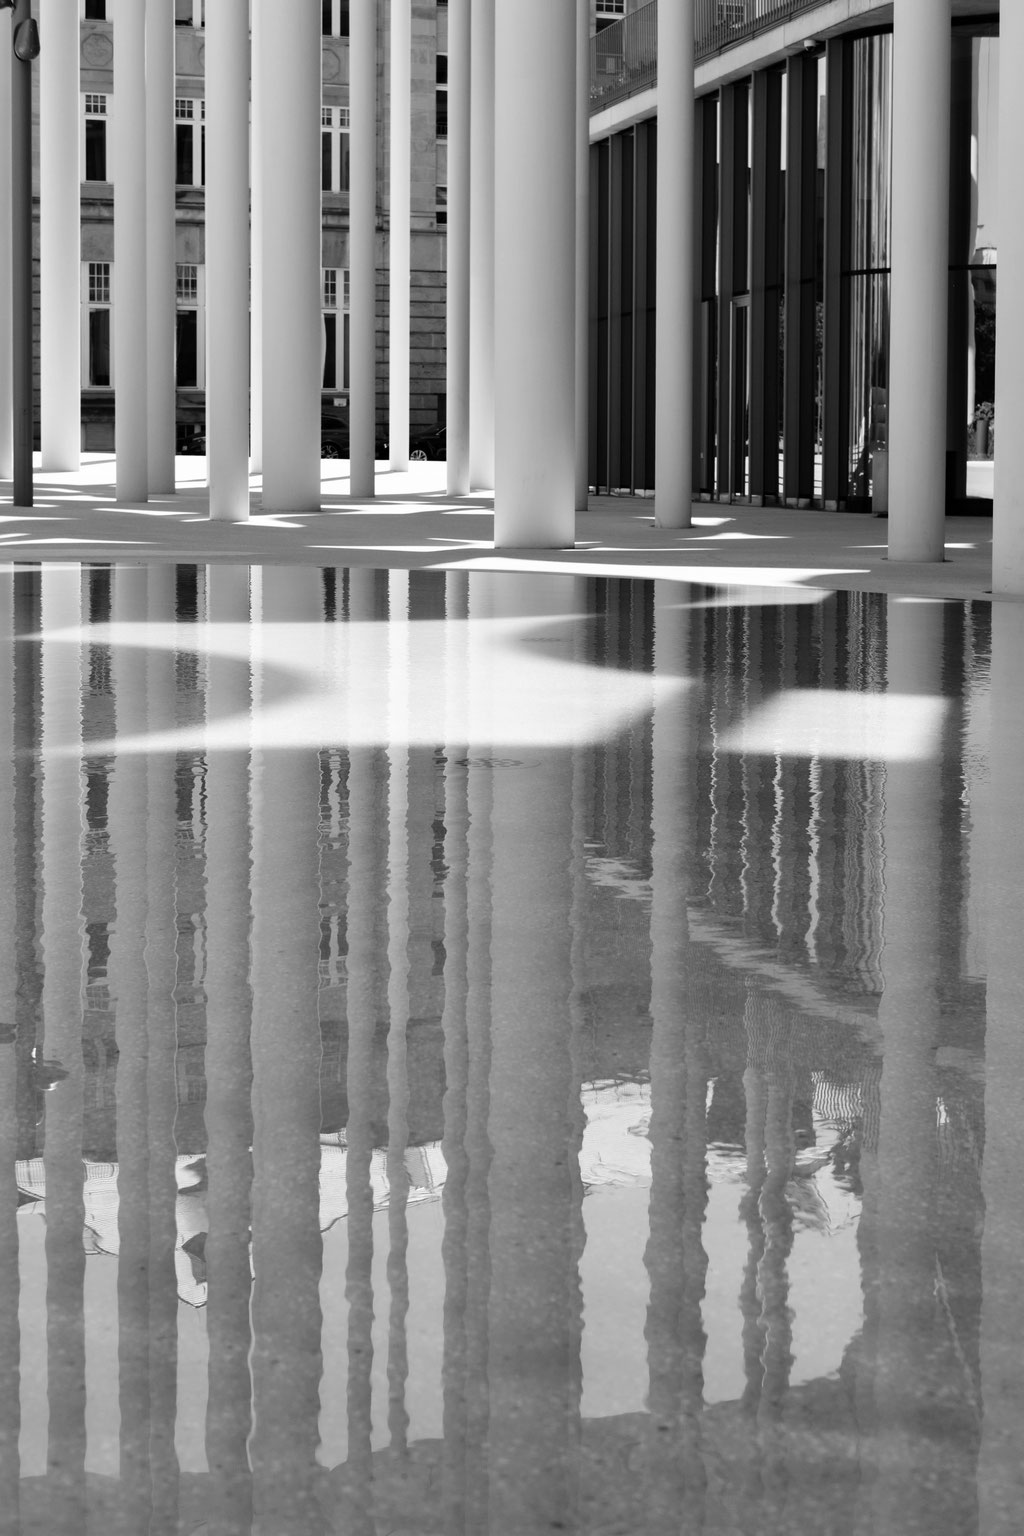 Spiegelung großer Säulen vor Architektur.